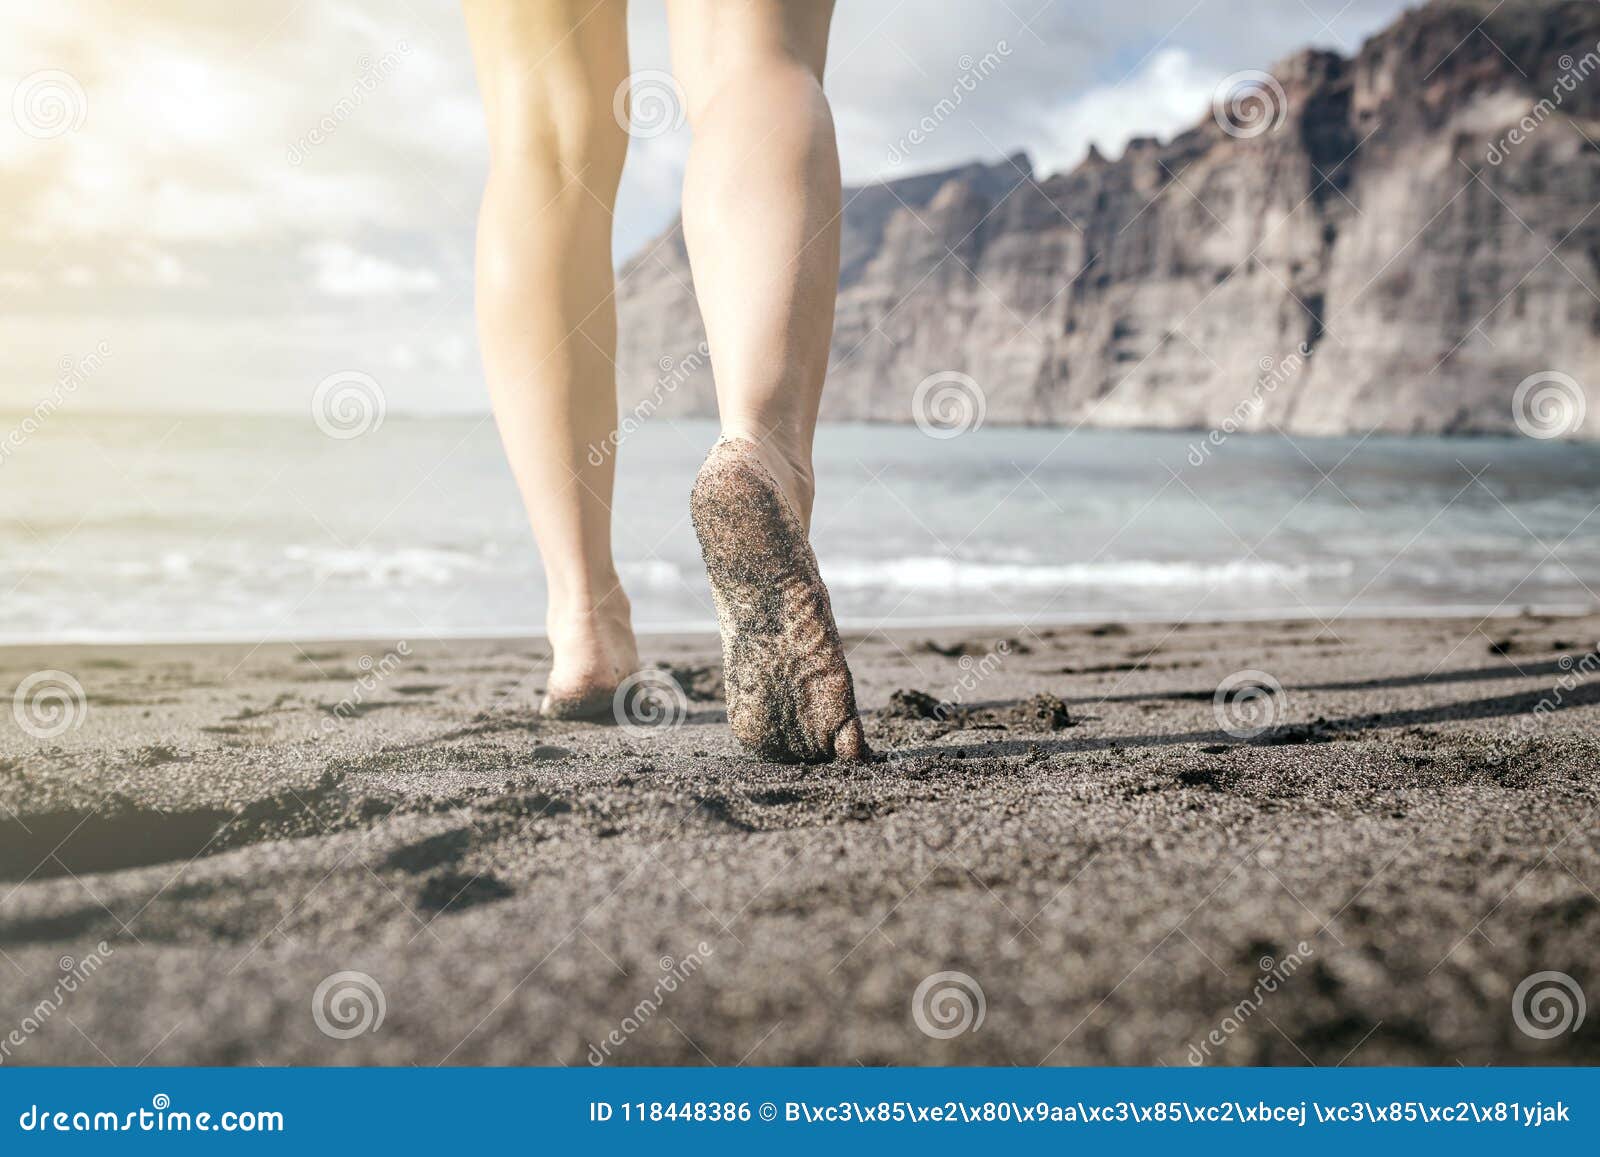 Woman Barefoot Walking On A Beach, Summer Inspiration 